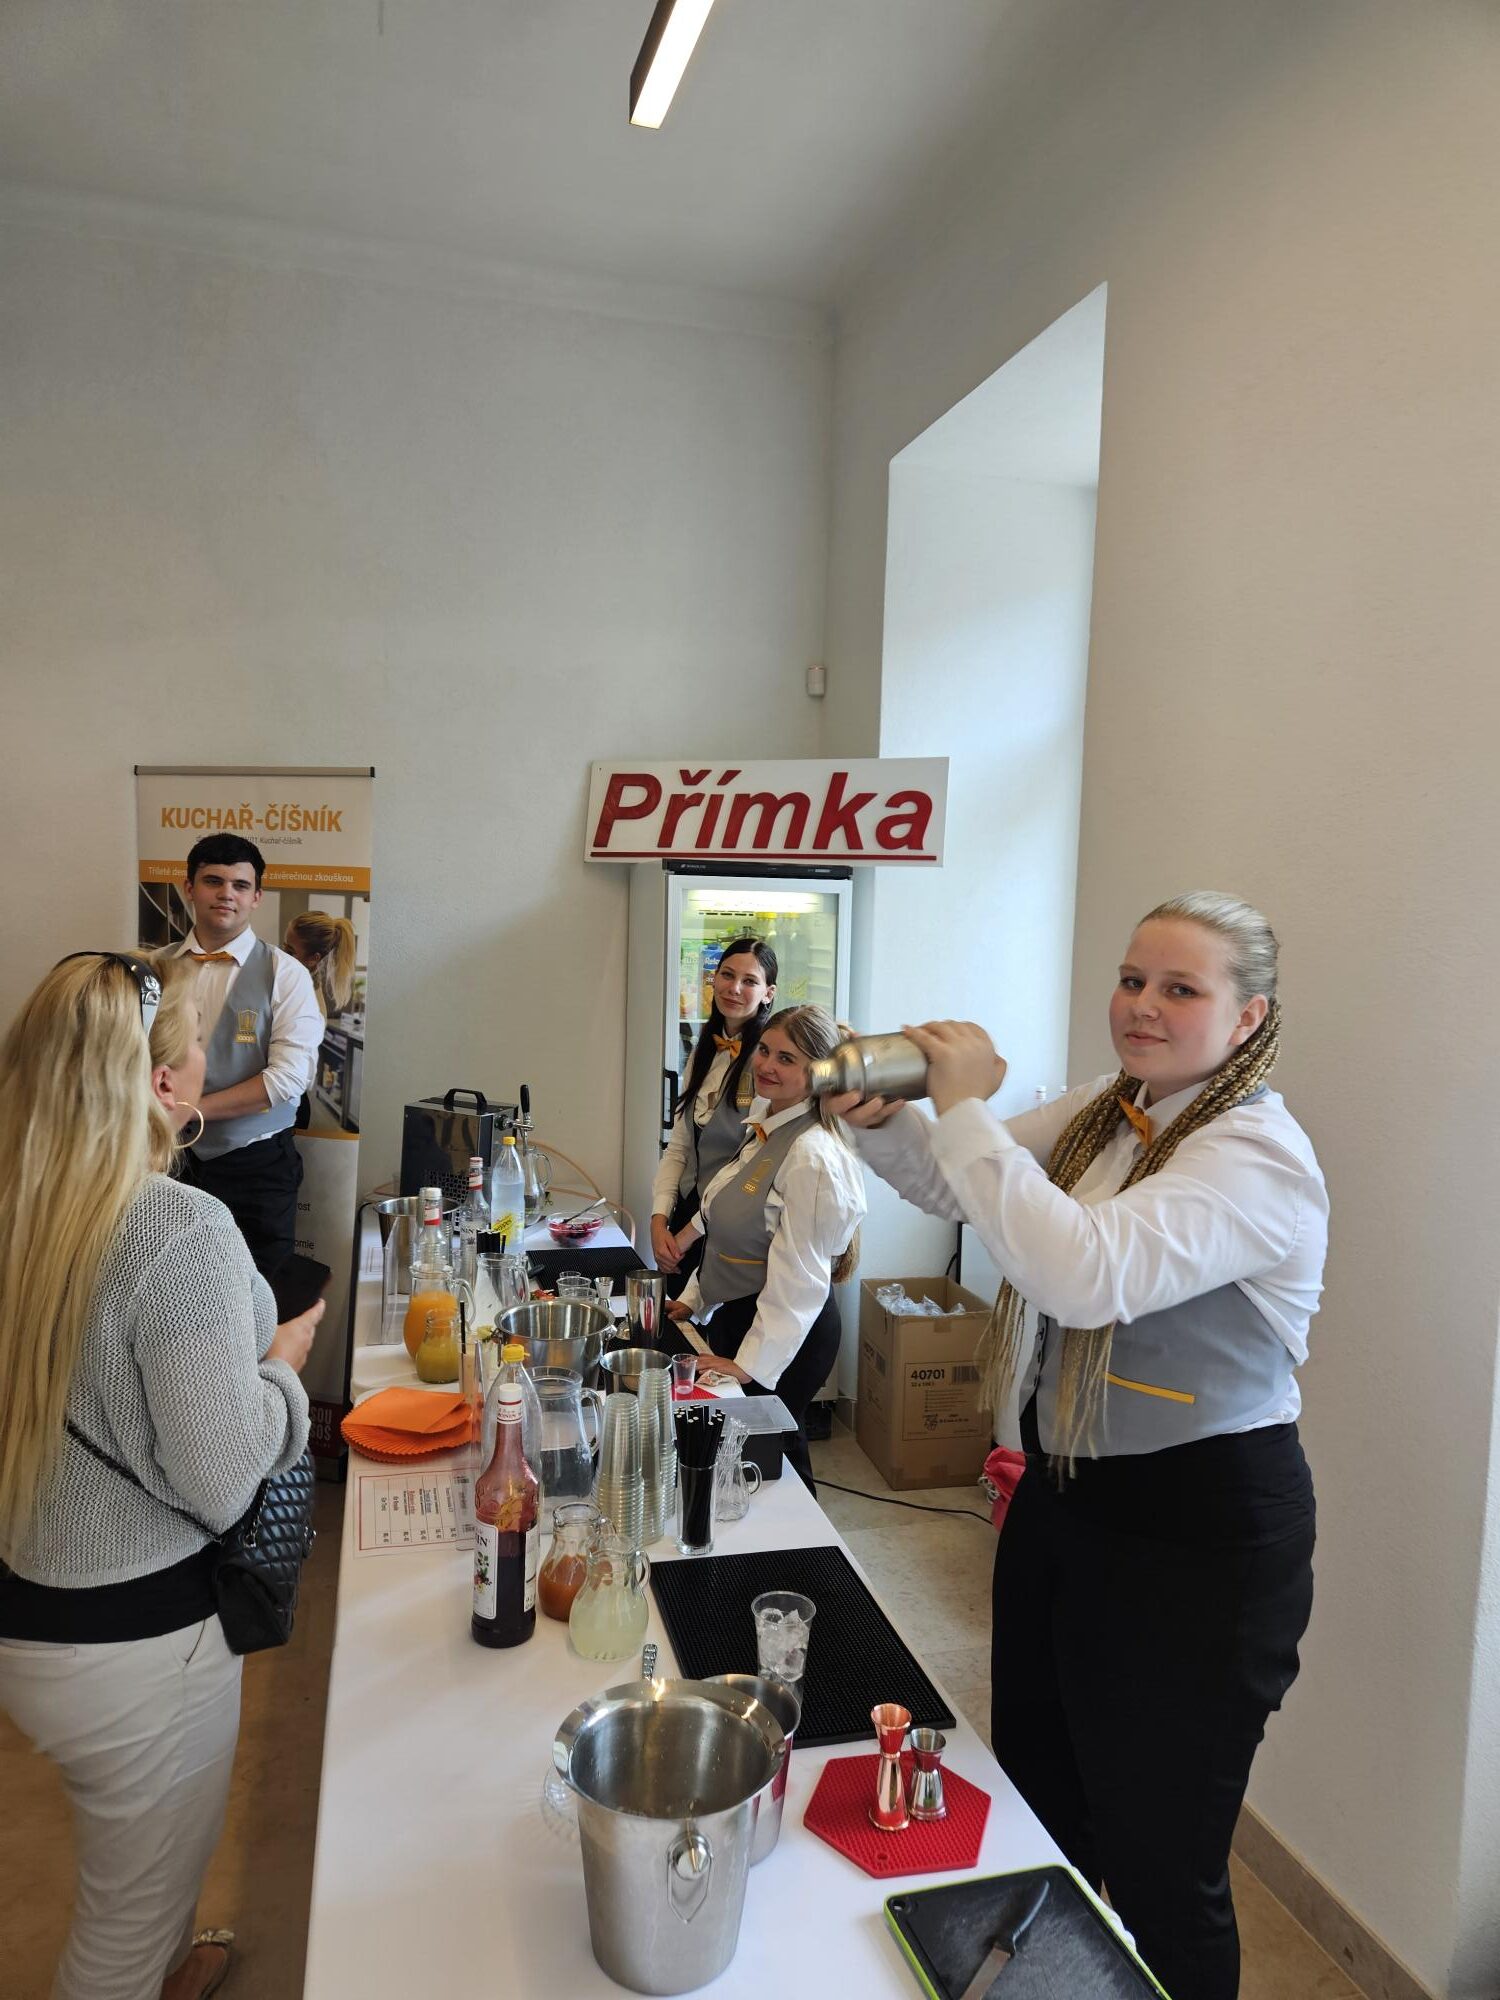 Featured image for “Barmani z Přímky nabídli v Louce drinky”